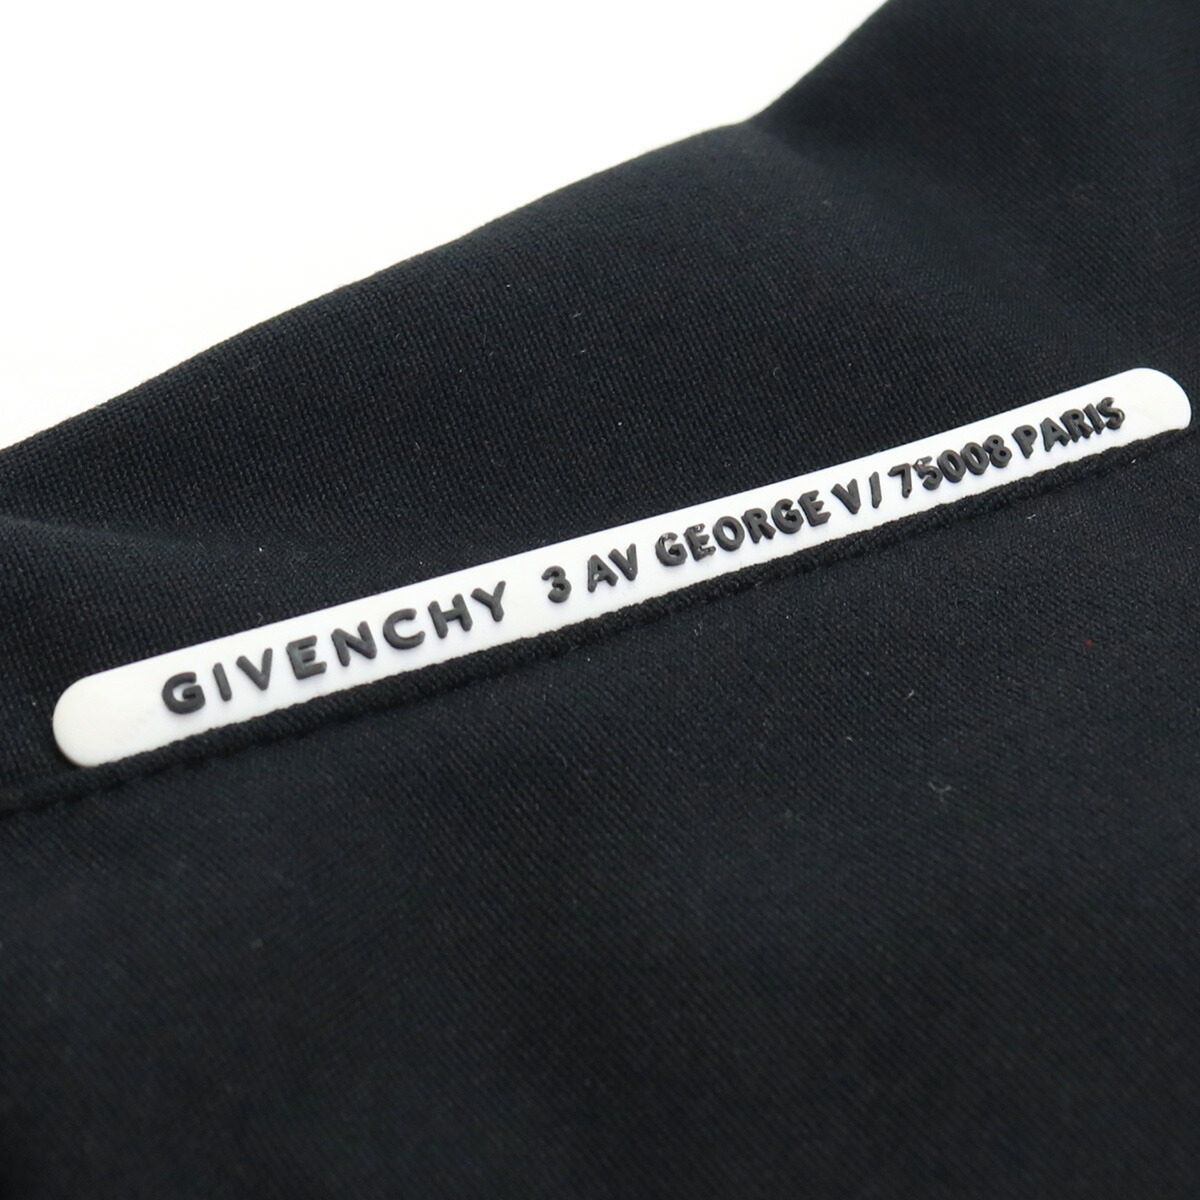 ネクストライン ジバンシー Givenchy メンズ ネックウォーマー フェイスマスク マスク ブランドマスク Bpz01l P0bn 001 Bos 05 メンズ